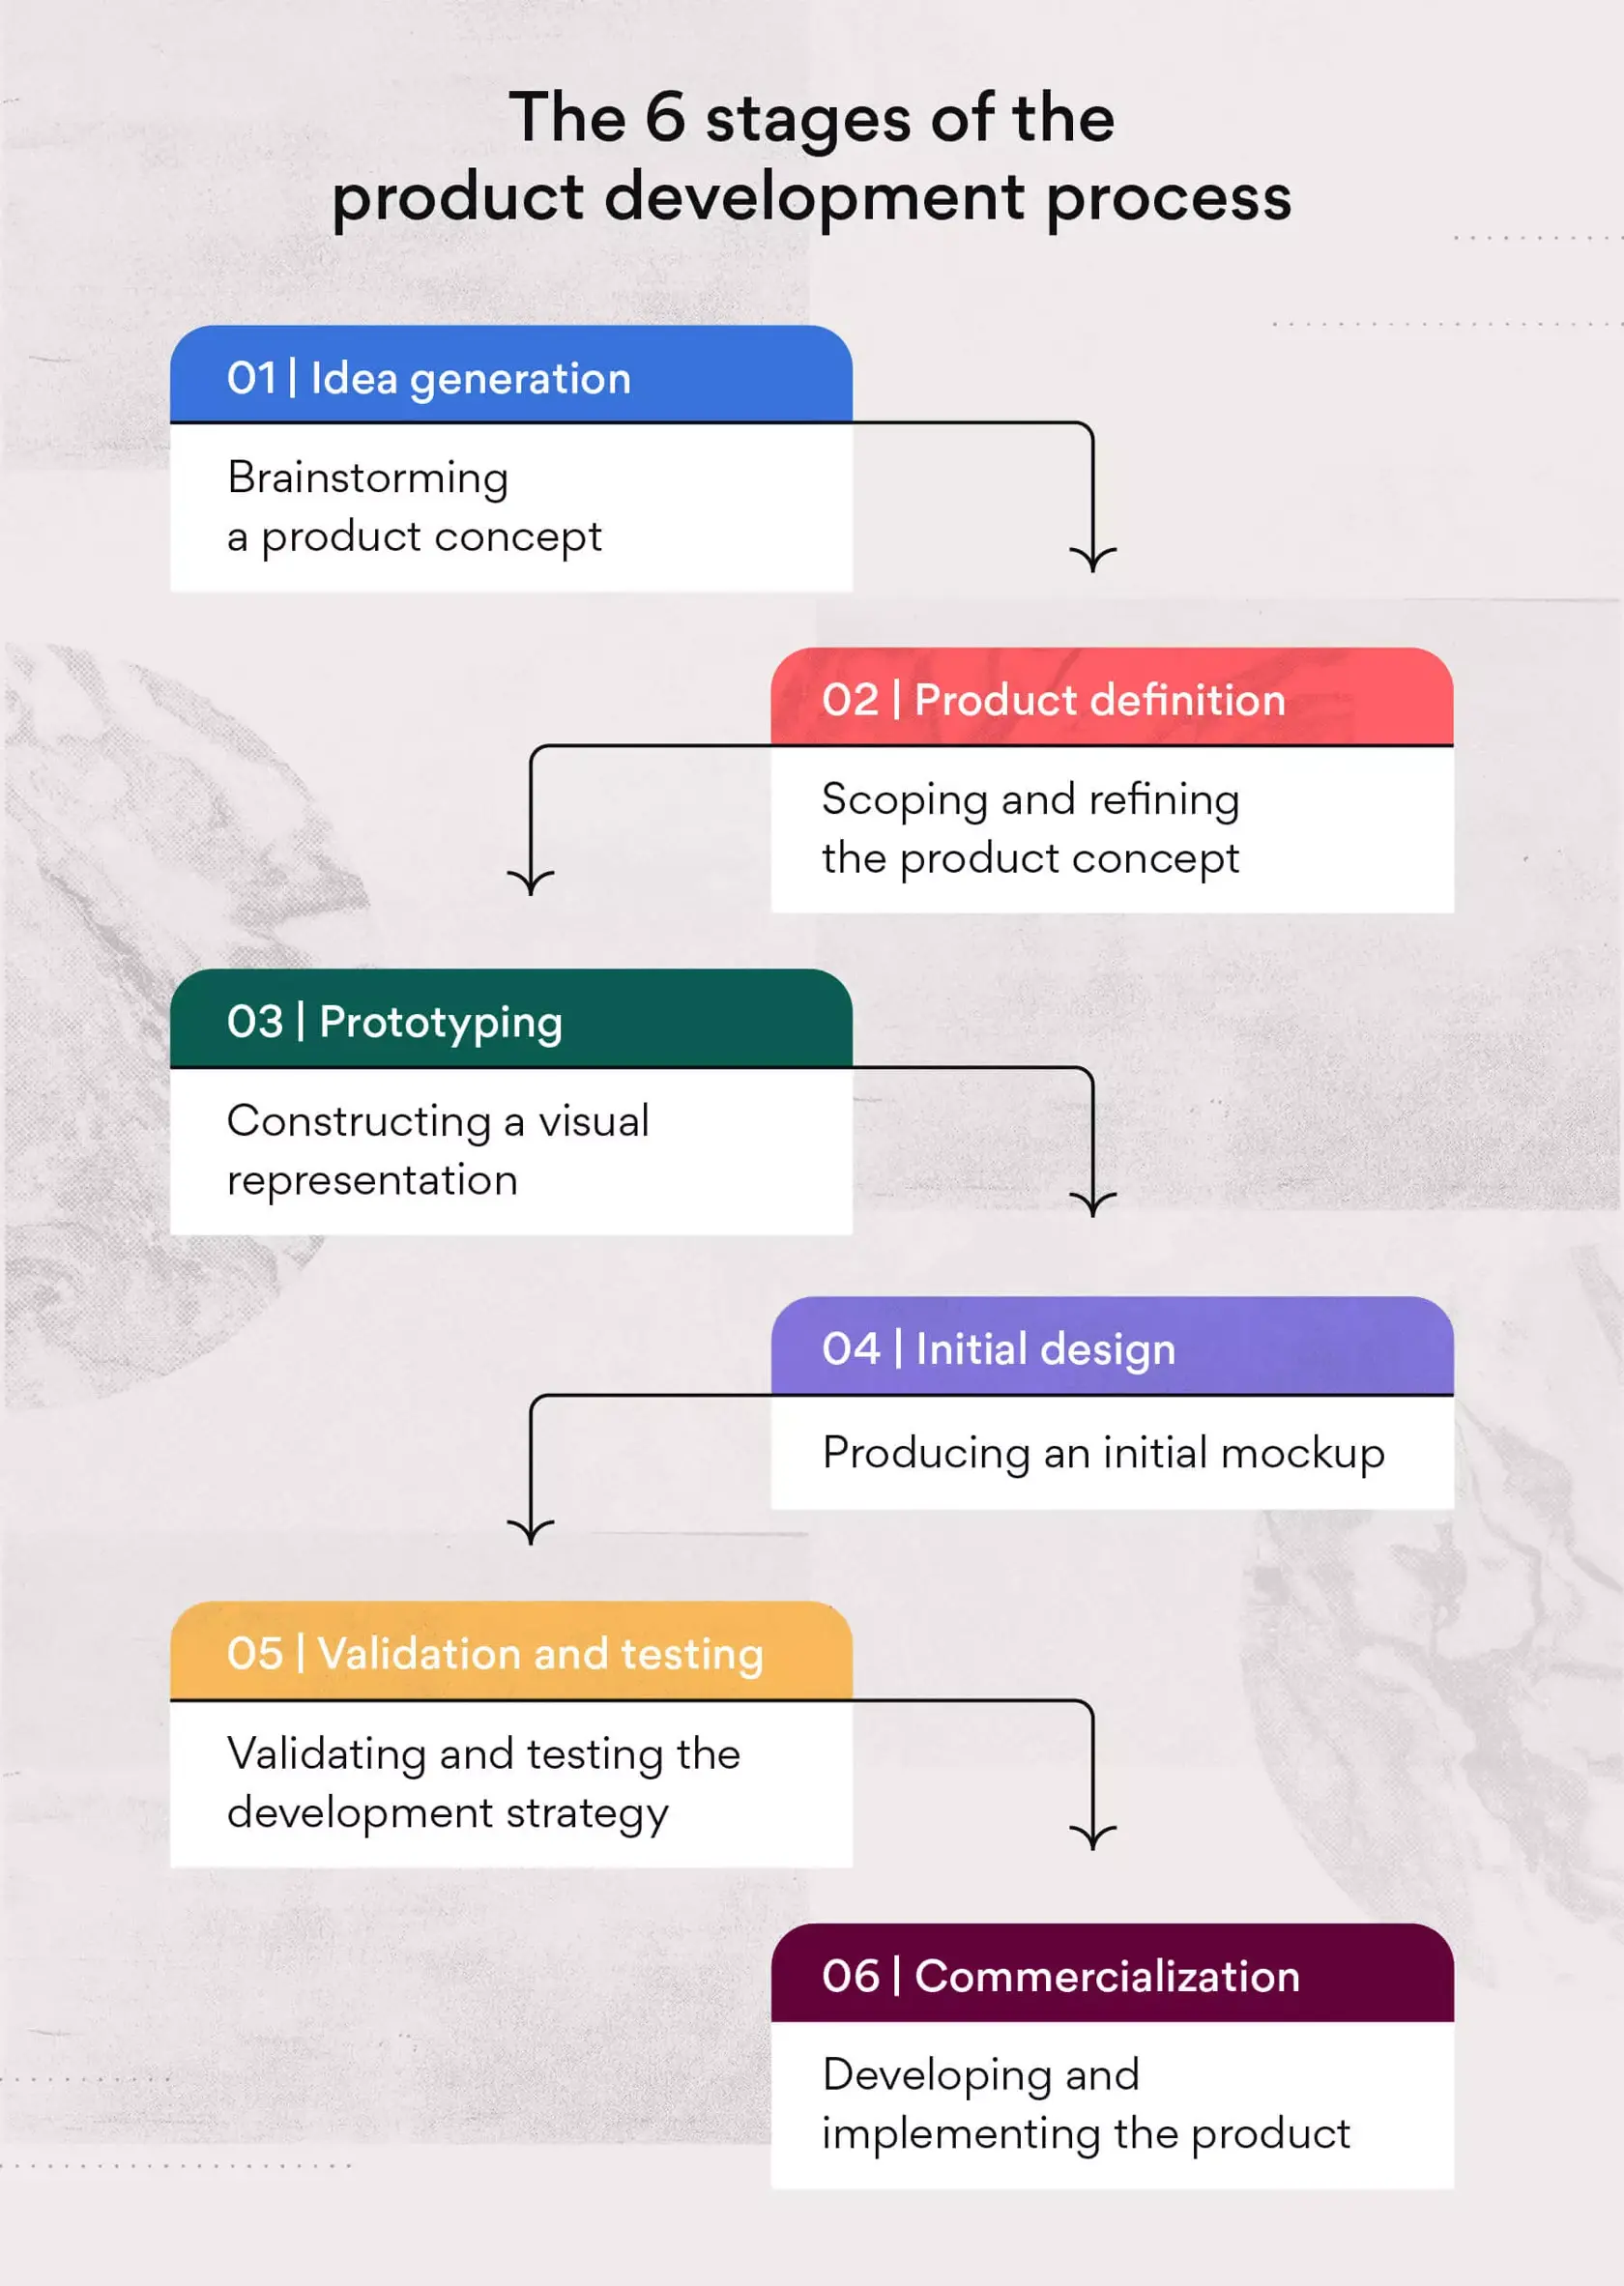 產品開發流程的 6 個階段